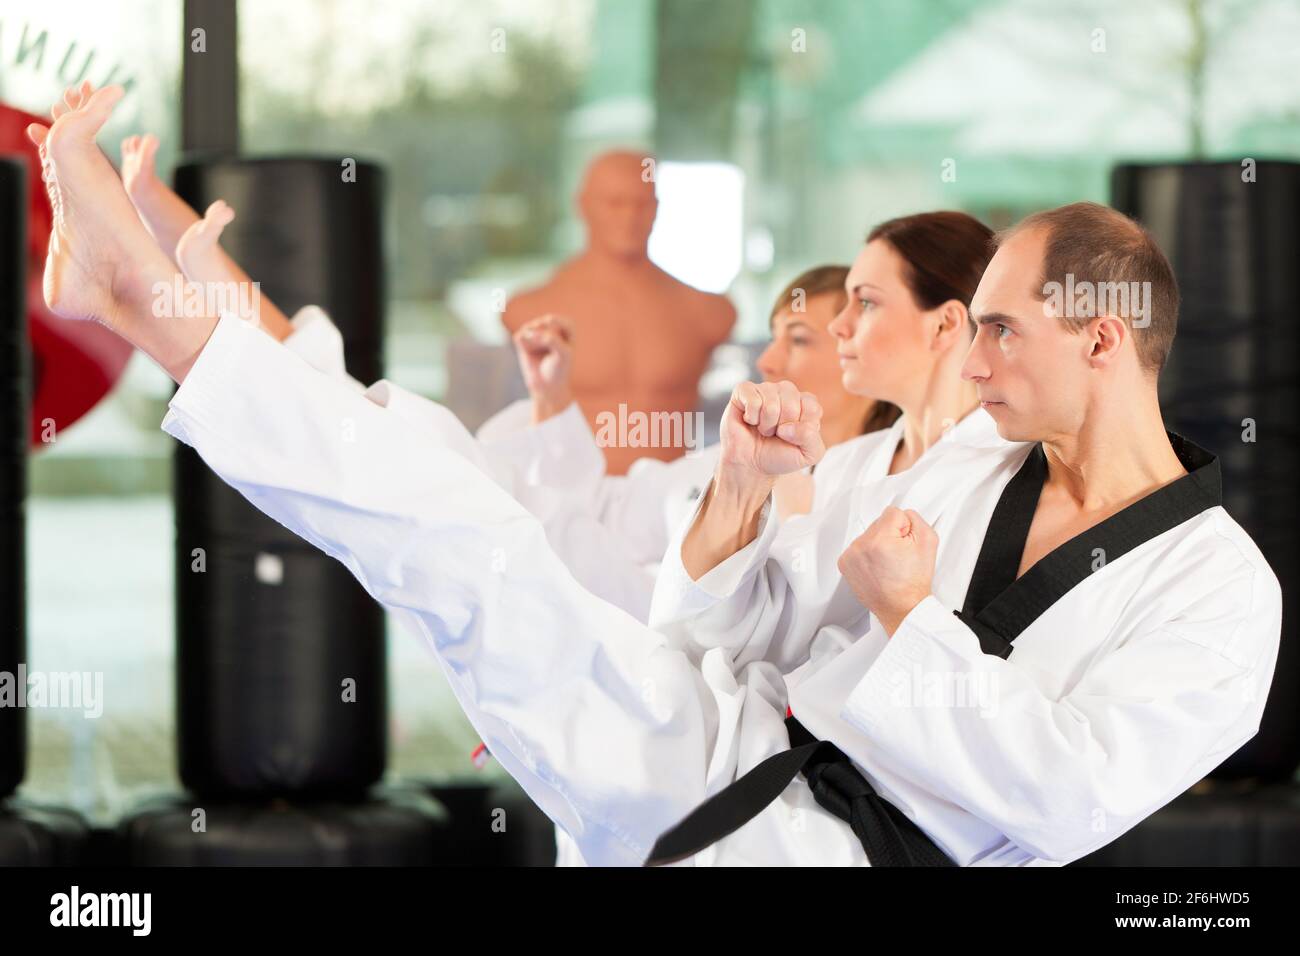 Leute im Fitnessstudio beim Training von Kampfsport, es geht um Taekwondo, der Trainer Hat den schwarzen Gürtel Foto de stock